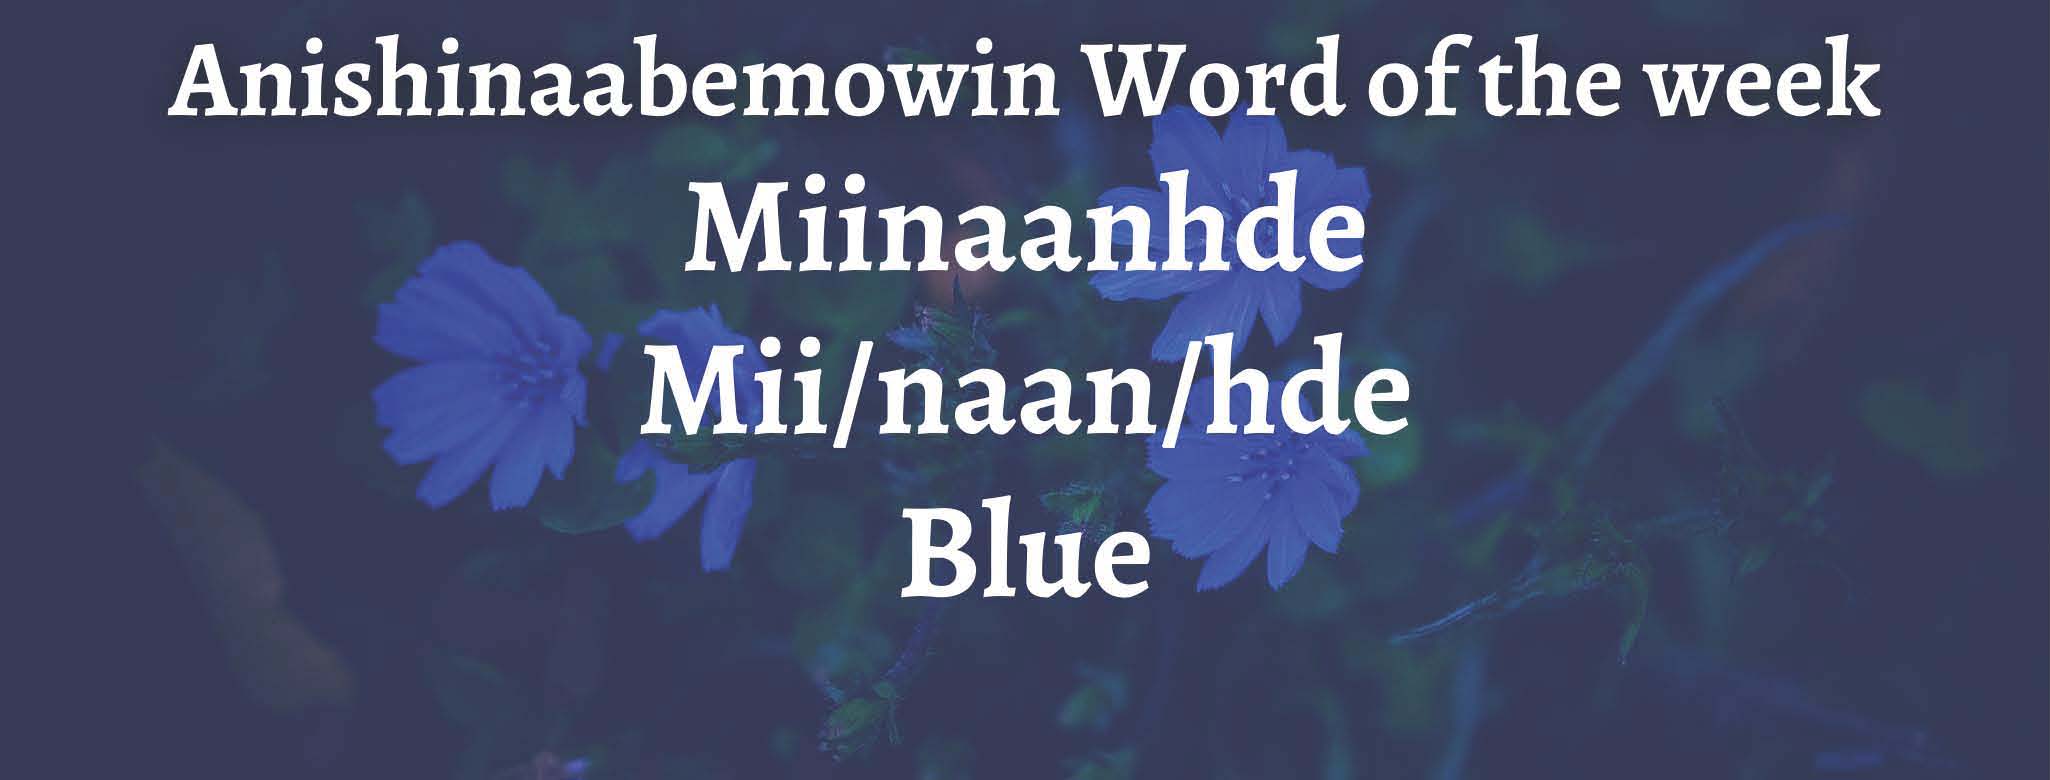 Anishinaabemowin Word of the week Miinaanhde Blue